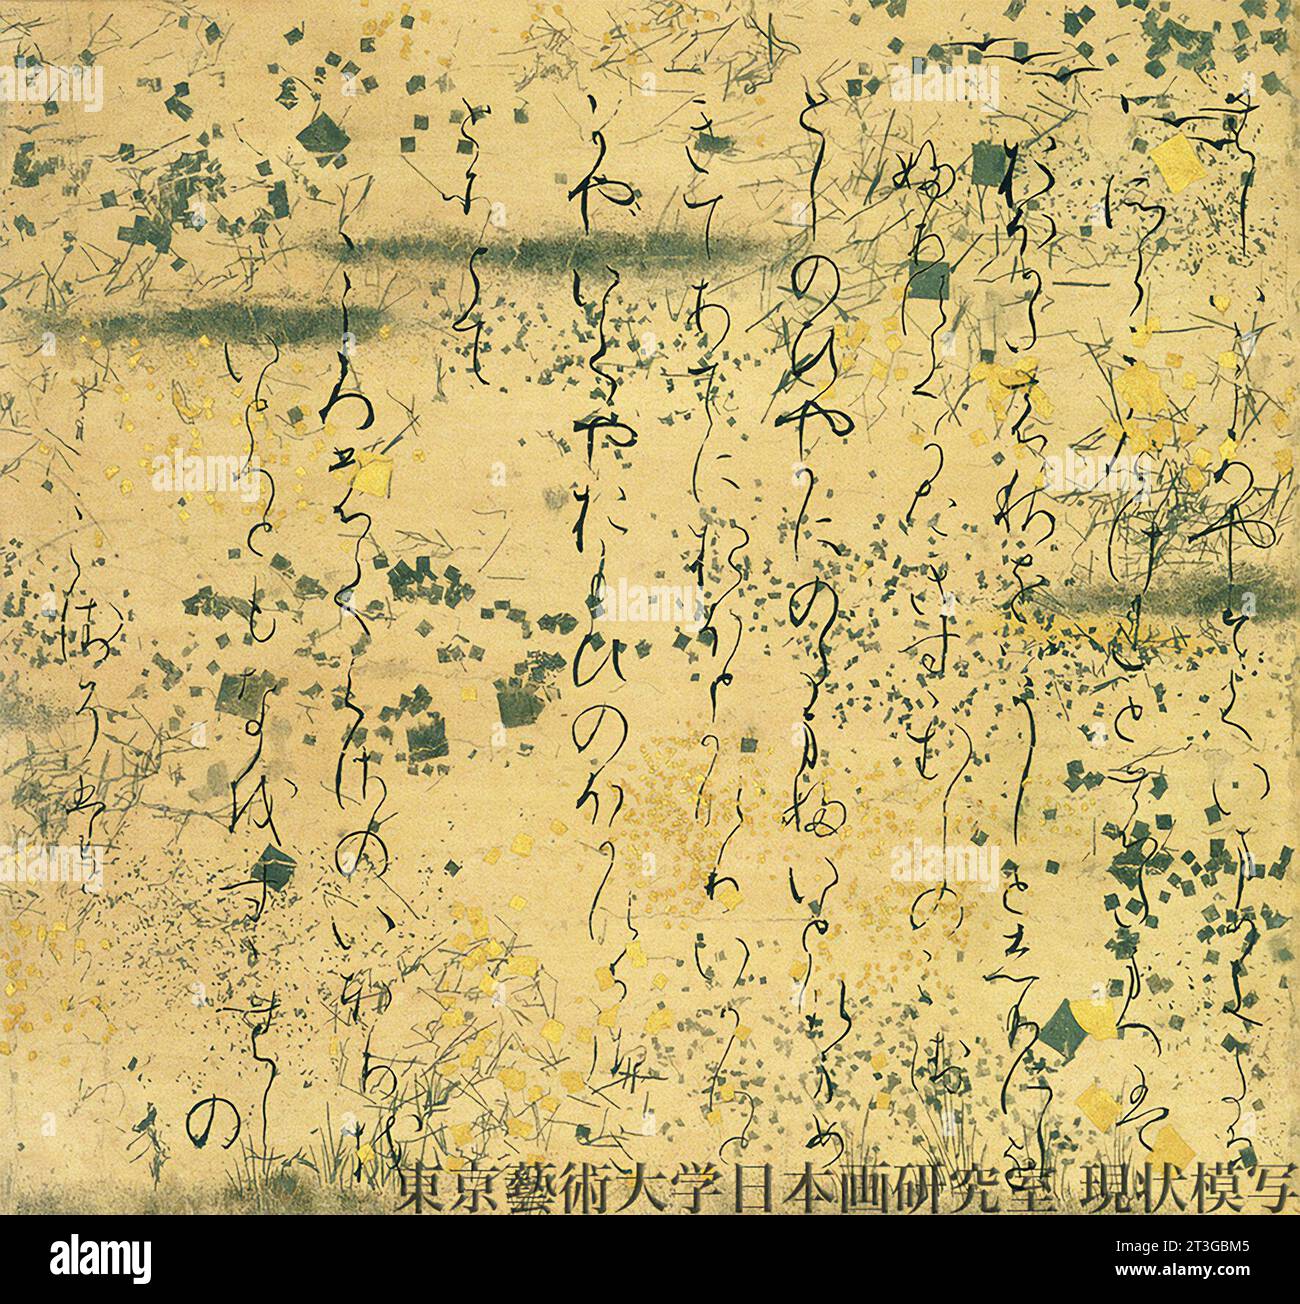 Geschichte von Genji. Fragment eines Emaki aus dem 12. Jahrhundert Genji Monogatari. Schriftlicher Text aus der frühesten illustrierten Handschrift Stockfoto